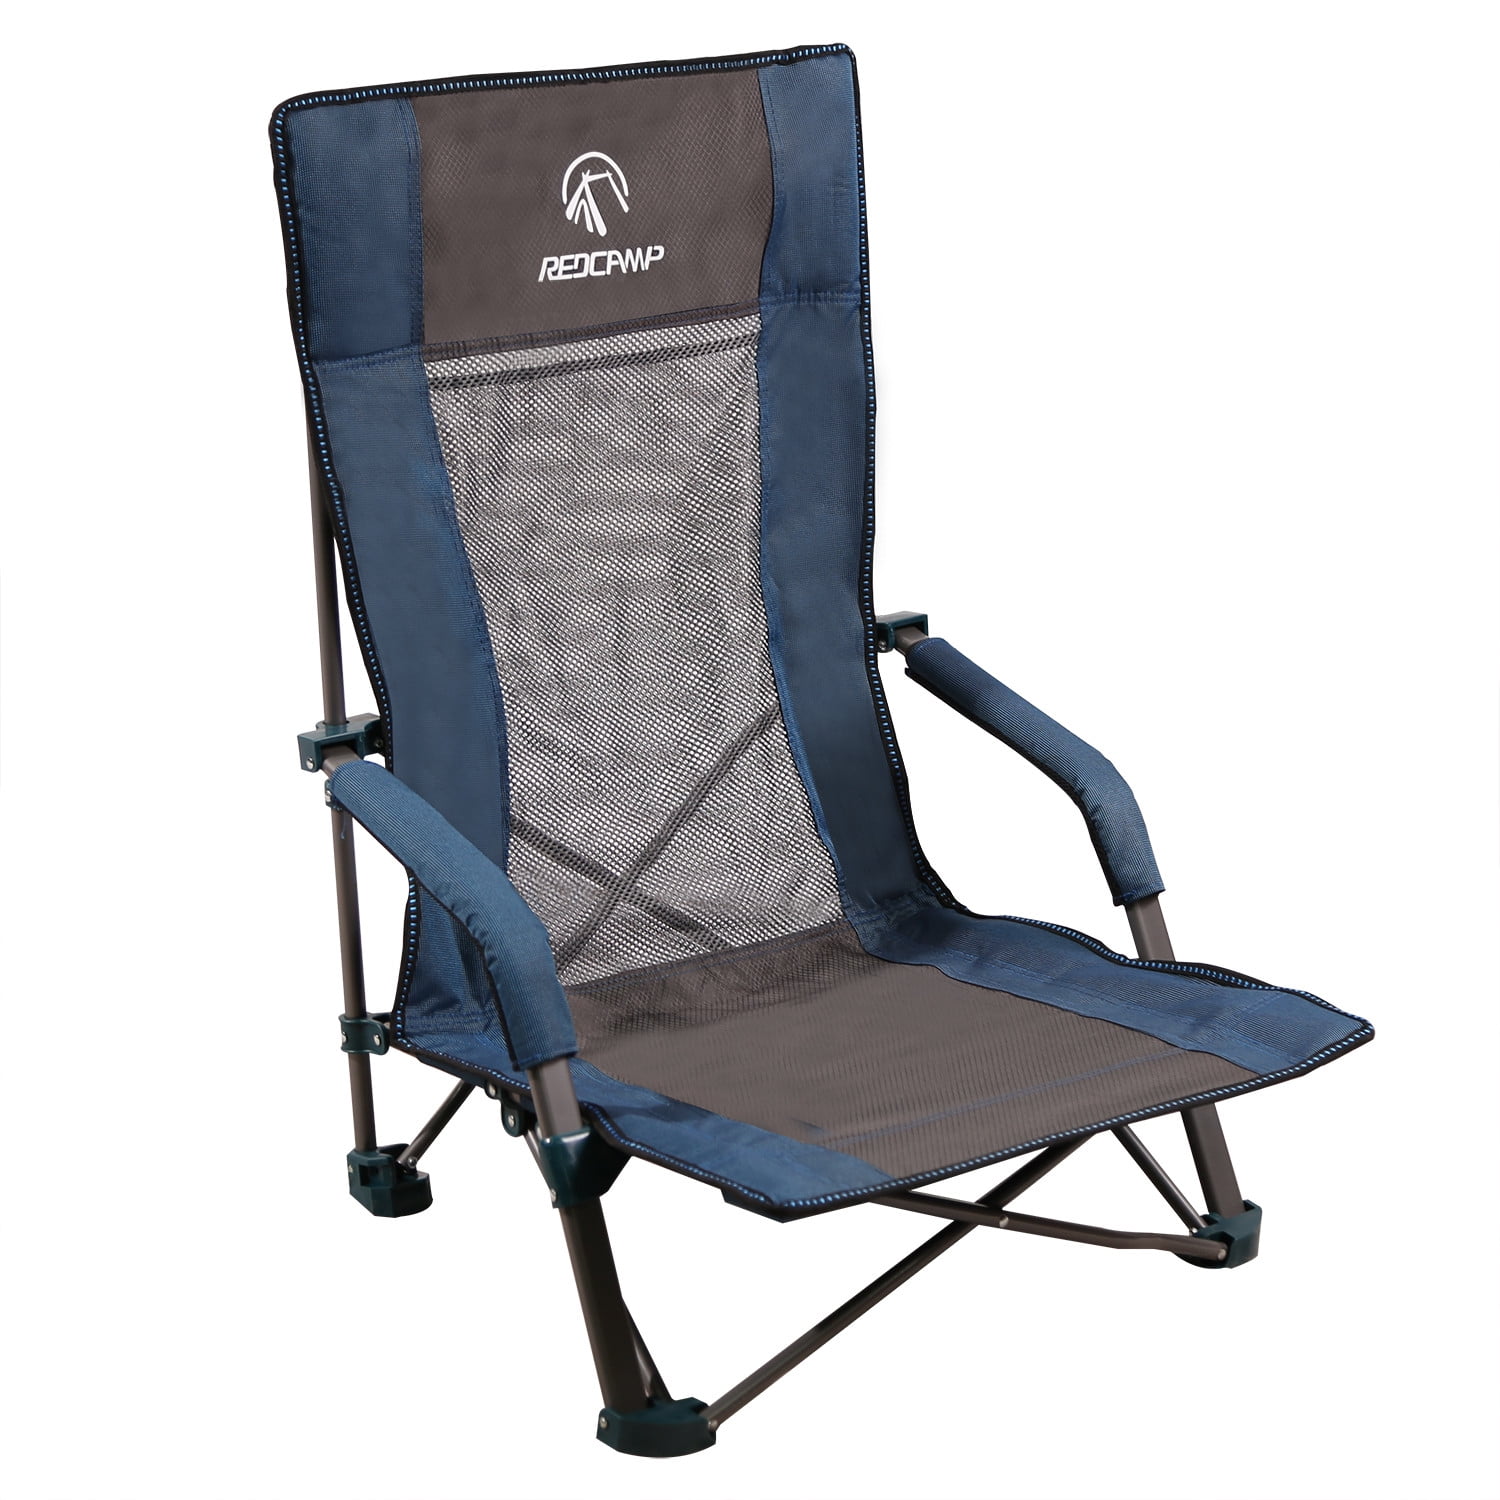 Portable High Chair Walmart - AUTCARIBLE High Chair Portable Booster